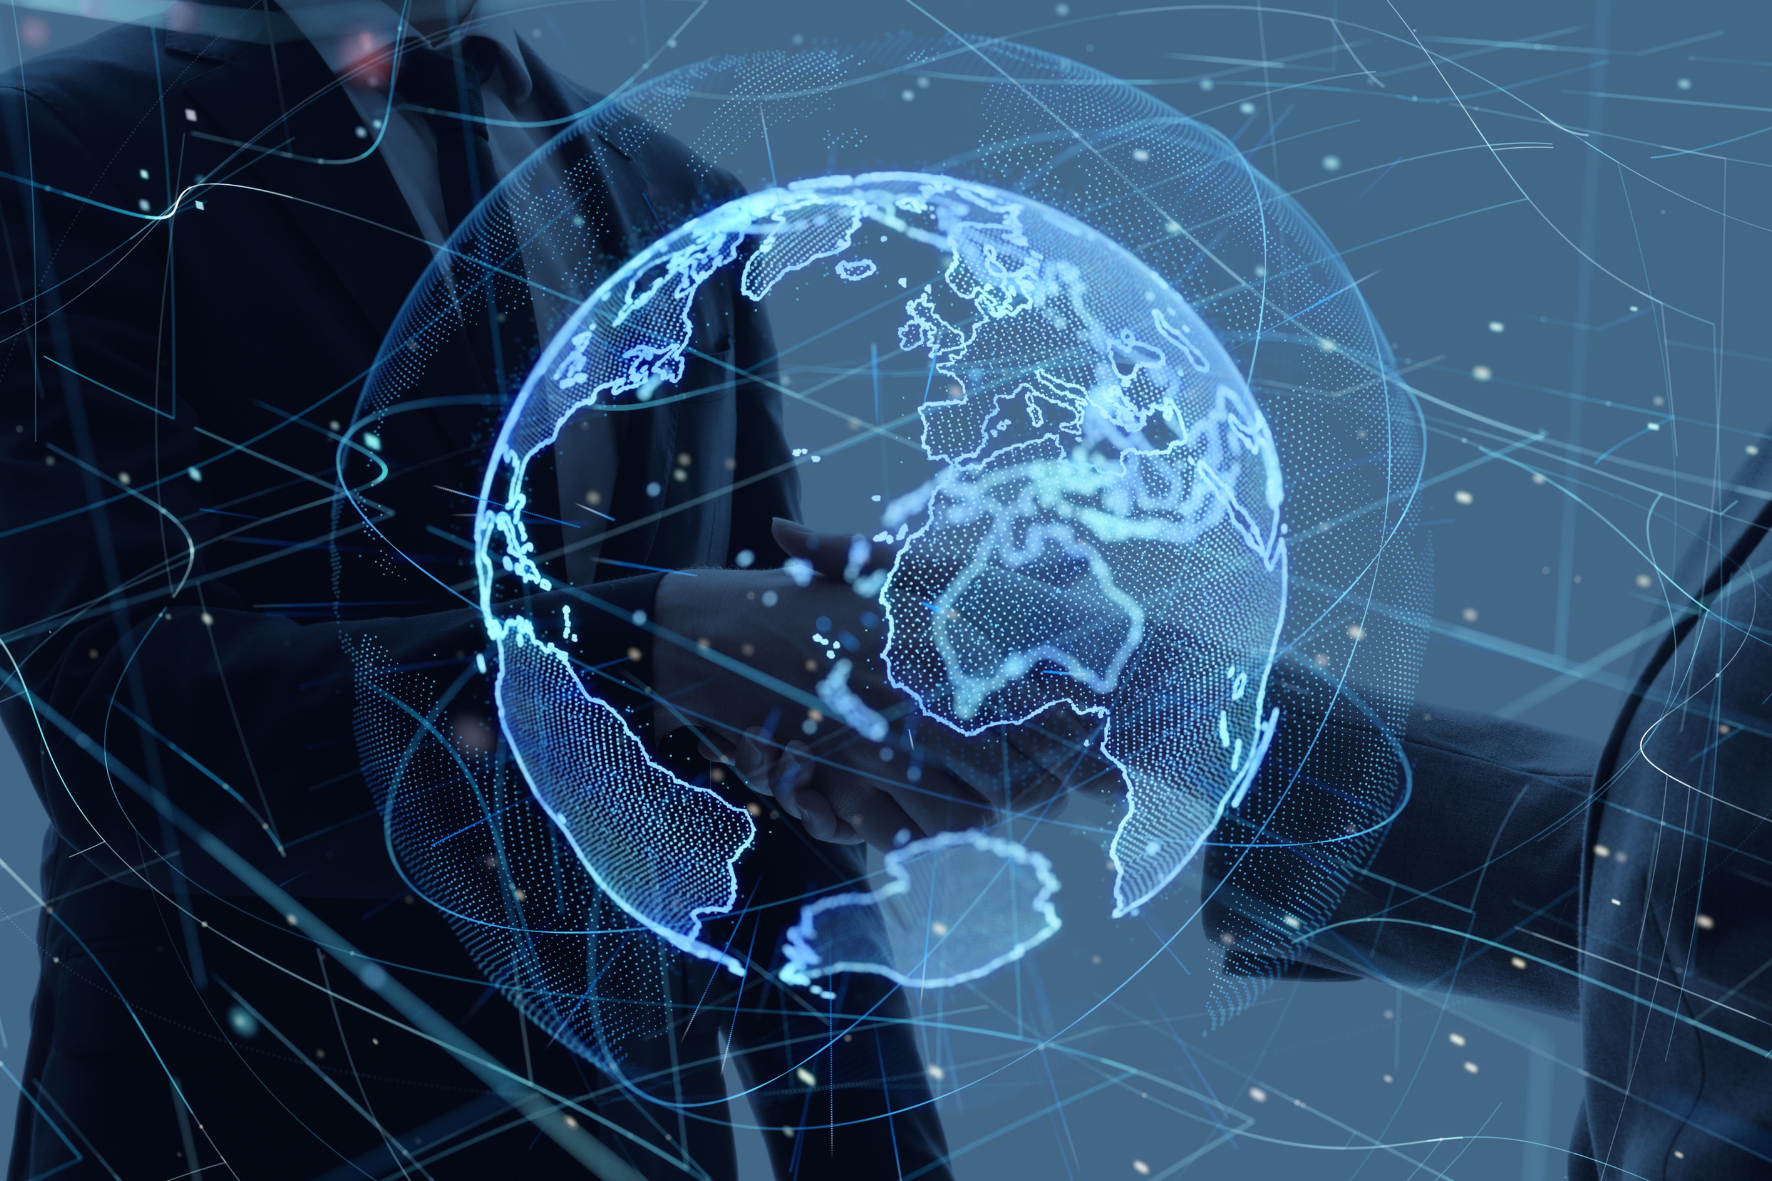 NVIDIA ratifica a Ascenty como aliada de data center, interconexión y telecomunicaciones para respaldar la estrategia de expansión de servicios digitales de sus clientes